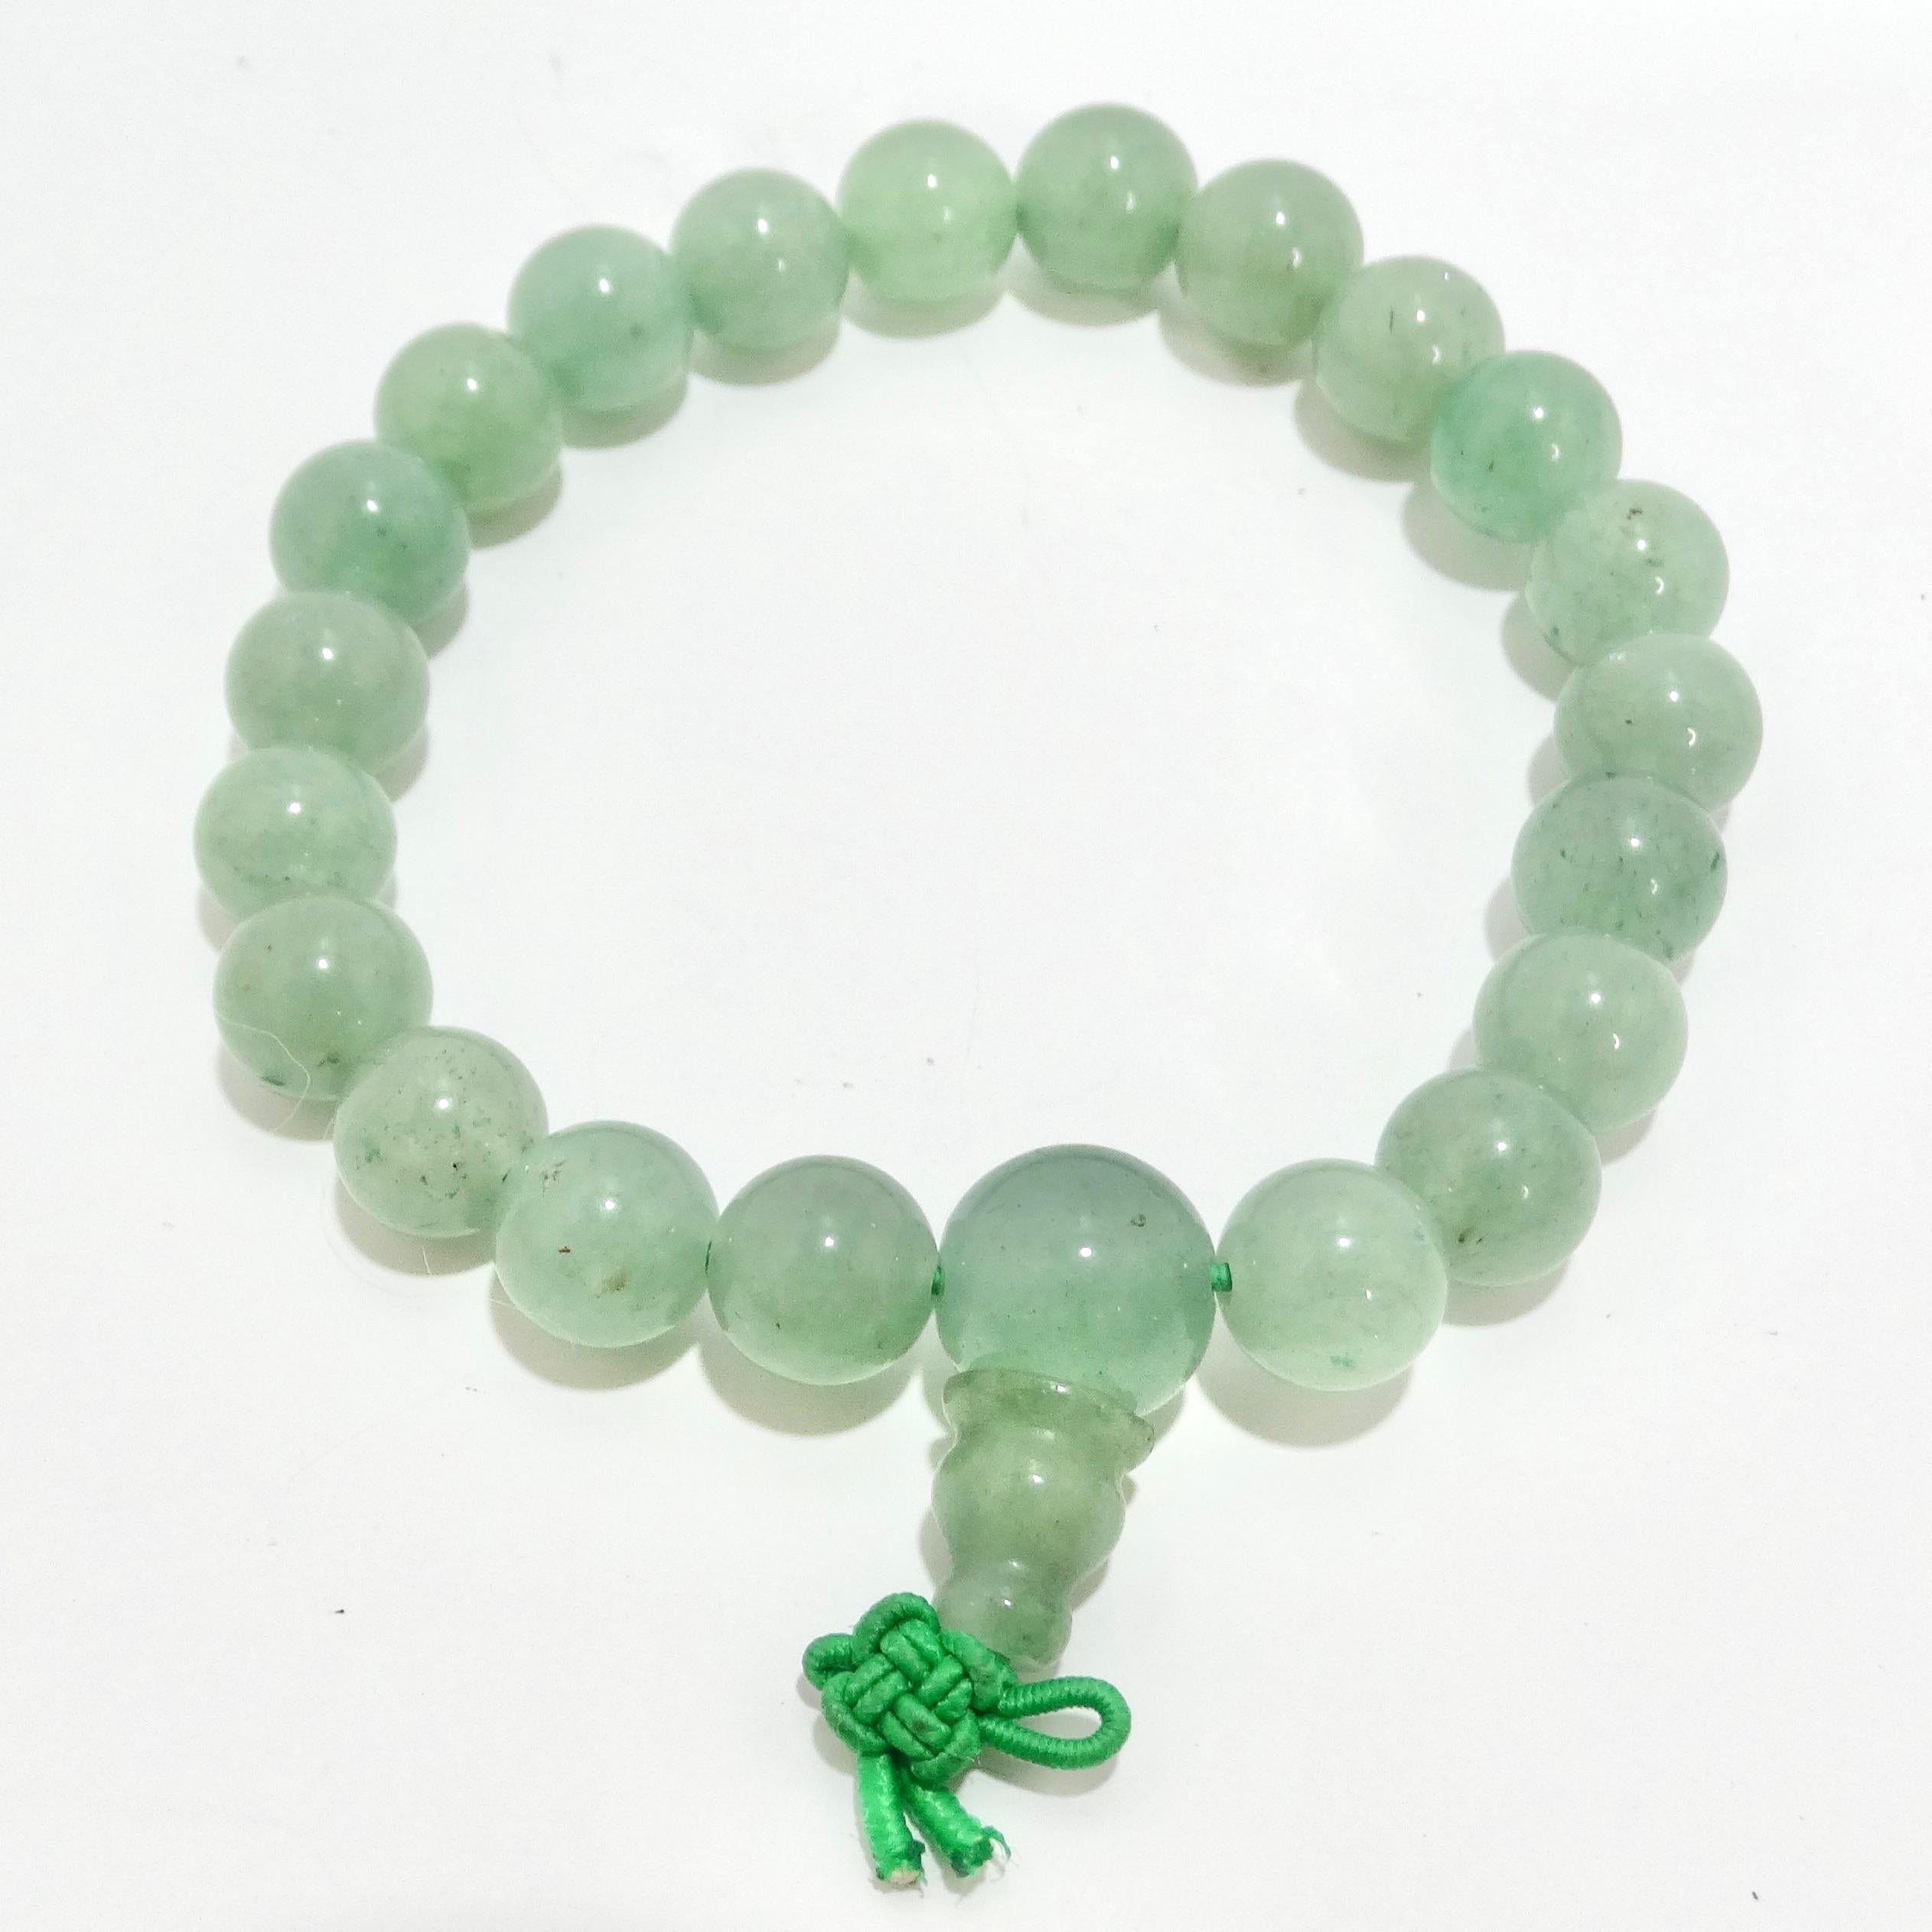 Schmücken Sie Ihr Handgelenk mit der Eleganz des 1970er Jade-Jadeit-Perlenarmbandes, einem zeitlosen Schmuckstück, das natürliche Schönheit und Raffinesse ausstrahlt. Dieses Armband aus chinesischer Jade zeigt atemberaubende kugelförmige Jadeperlen,